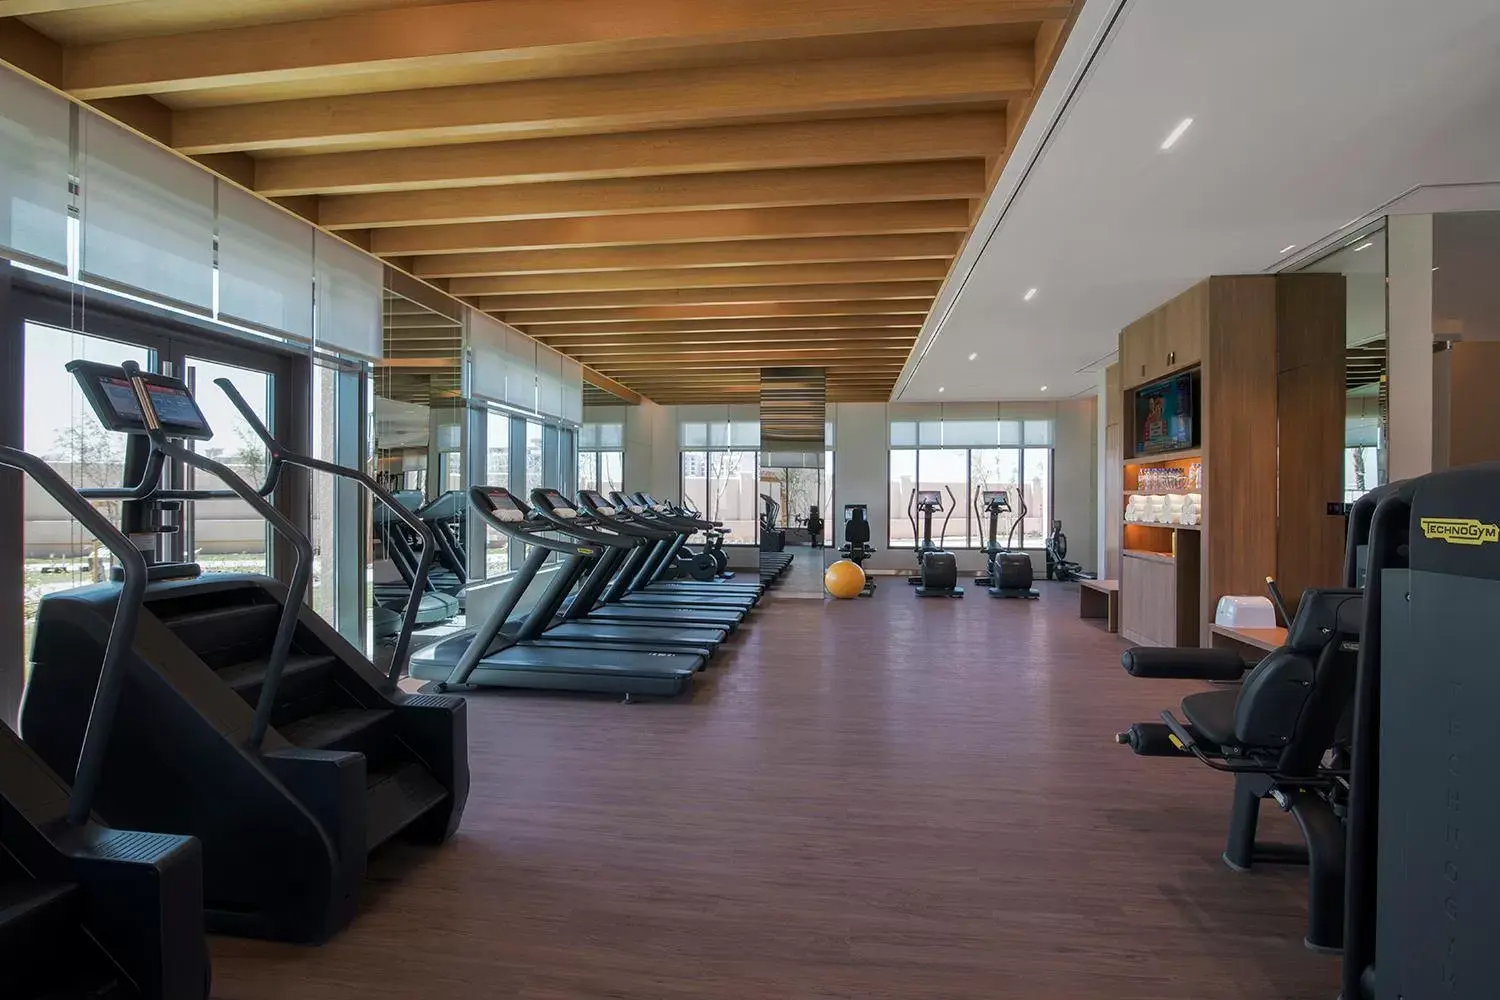 Fitness centre/facilities, Fitness Center/Facilities in Saadiyat Rotana Resort and Villas